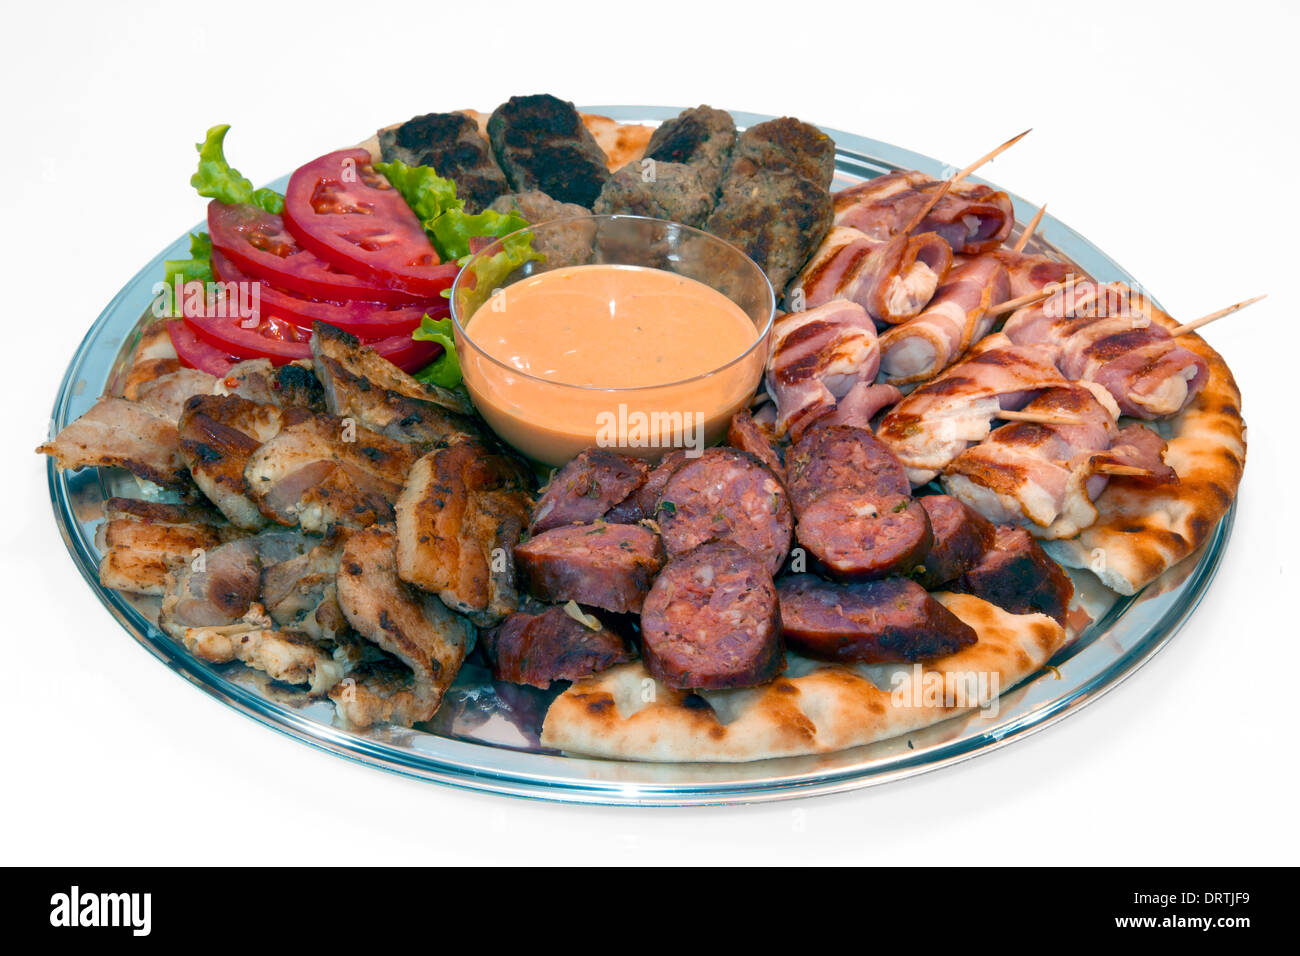 Mix Grill plateau de viande variété Photo Stock - Alamy